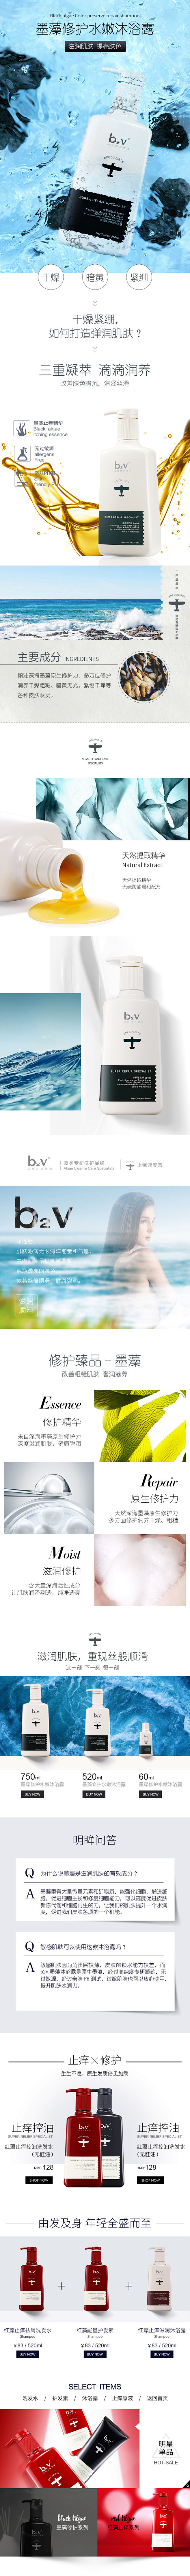 澳谷旗下品牌-b2v墨藻修护水嫩沐浴露